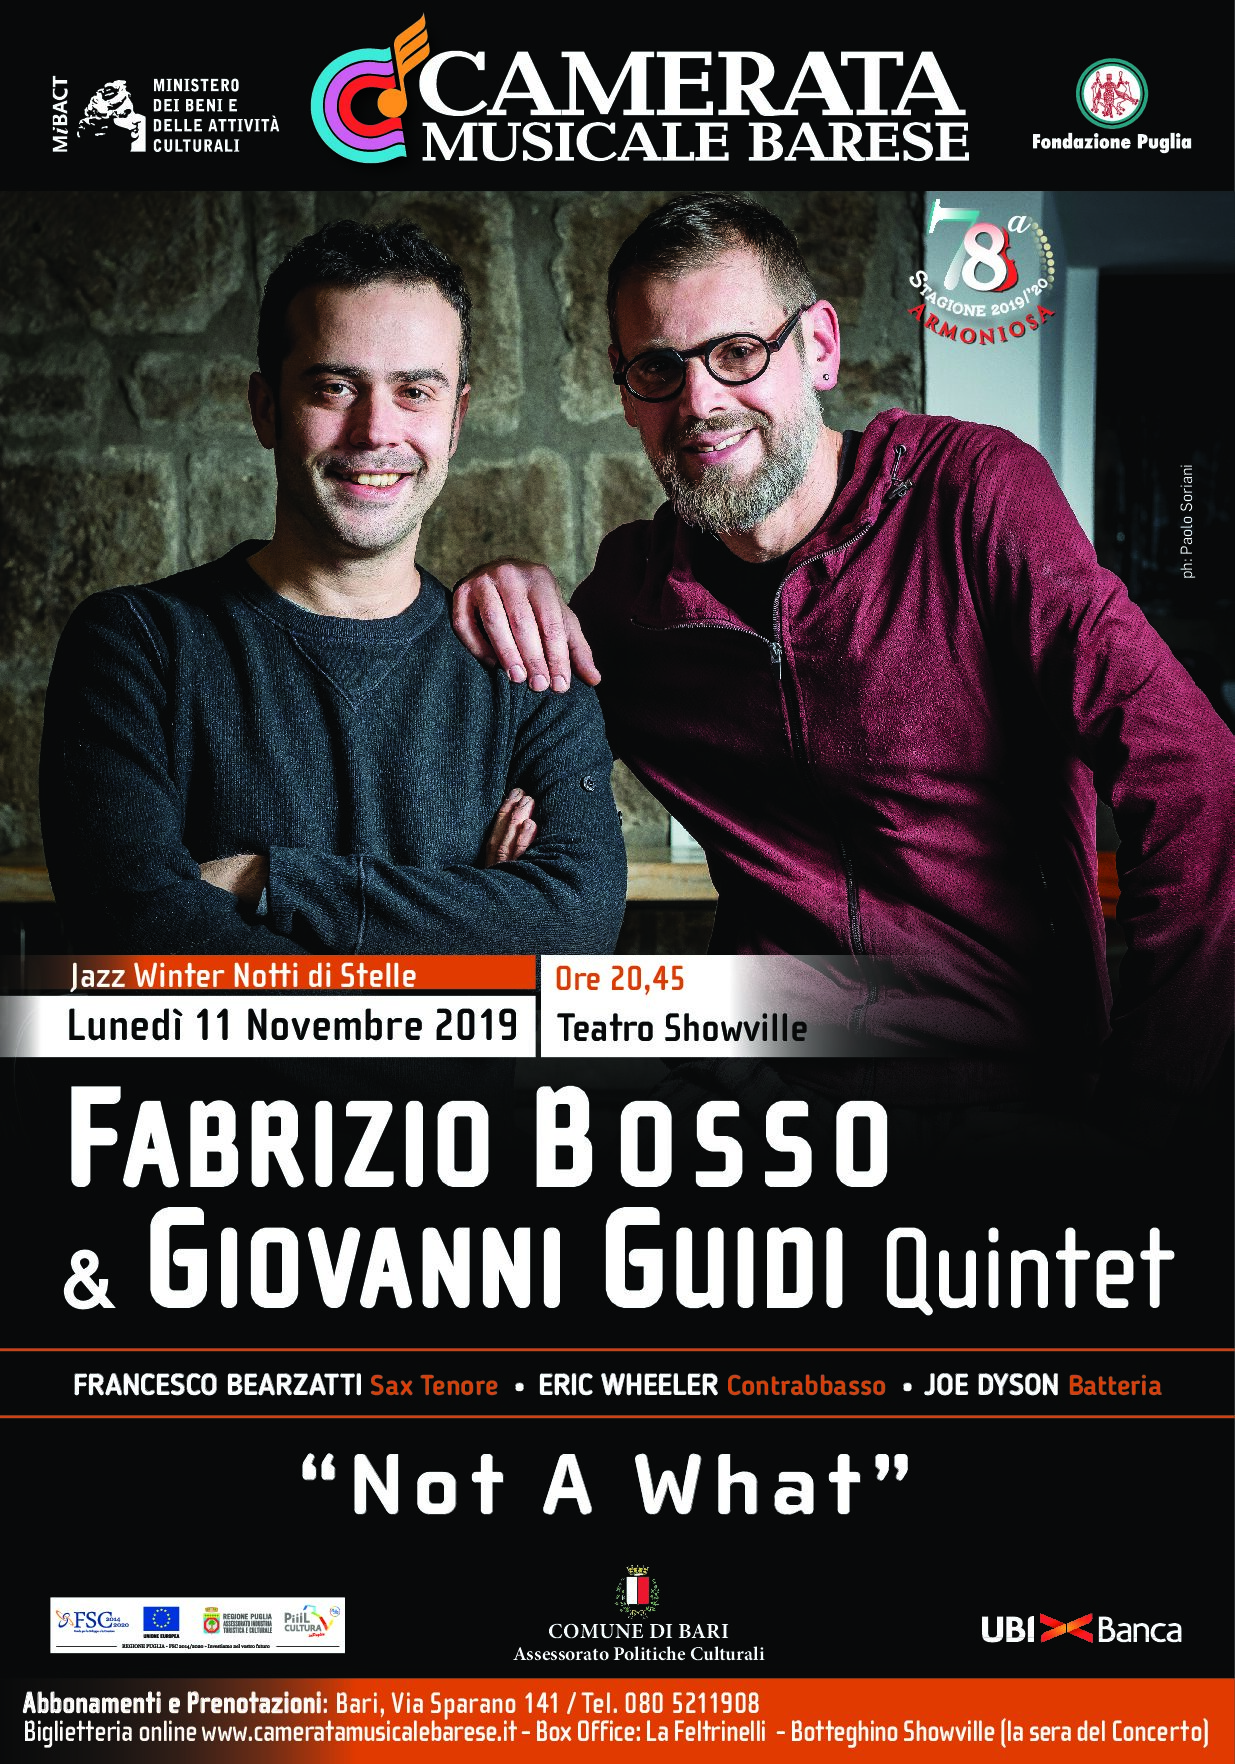 Manifesto Fabrizio Bosso & Giovanni Quintet